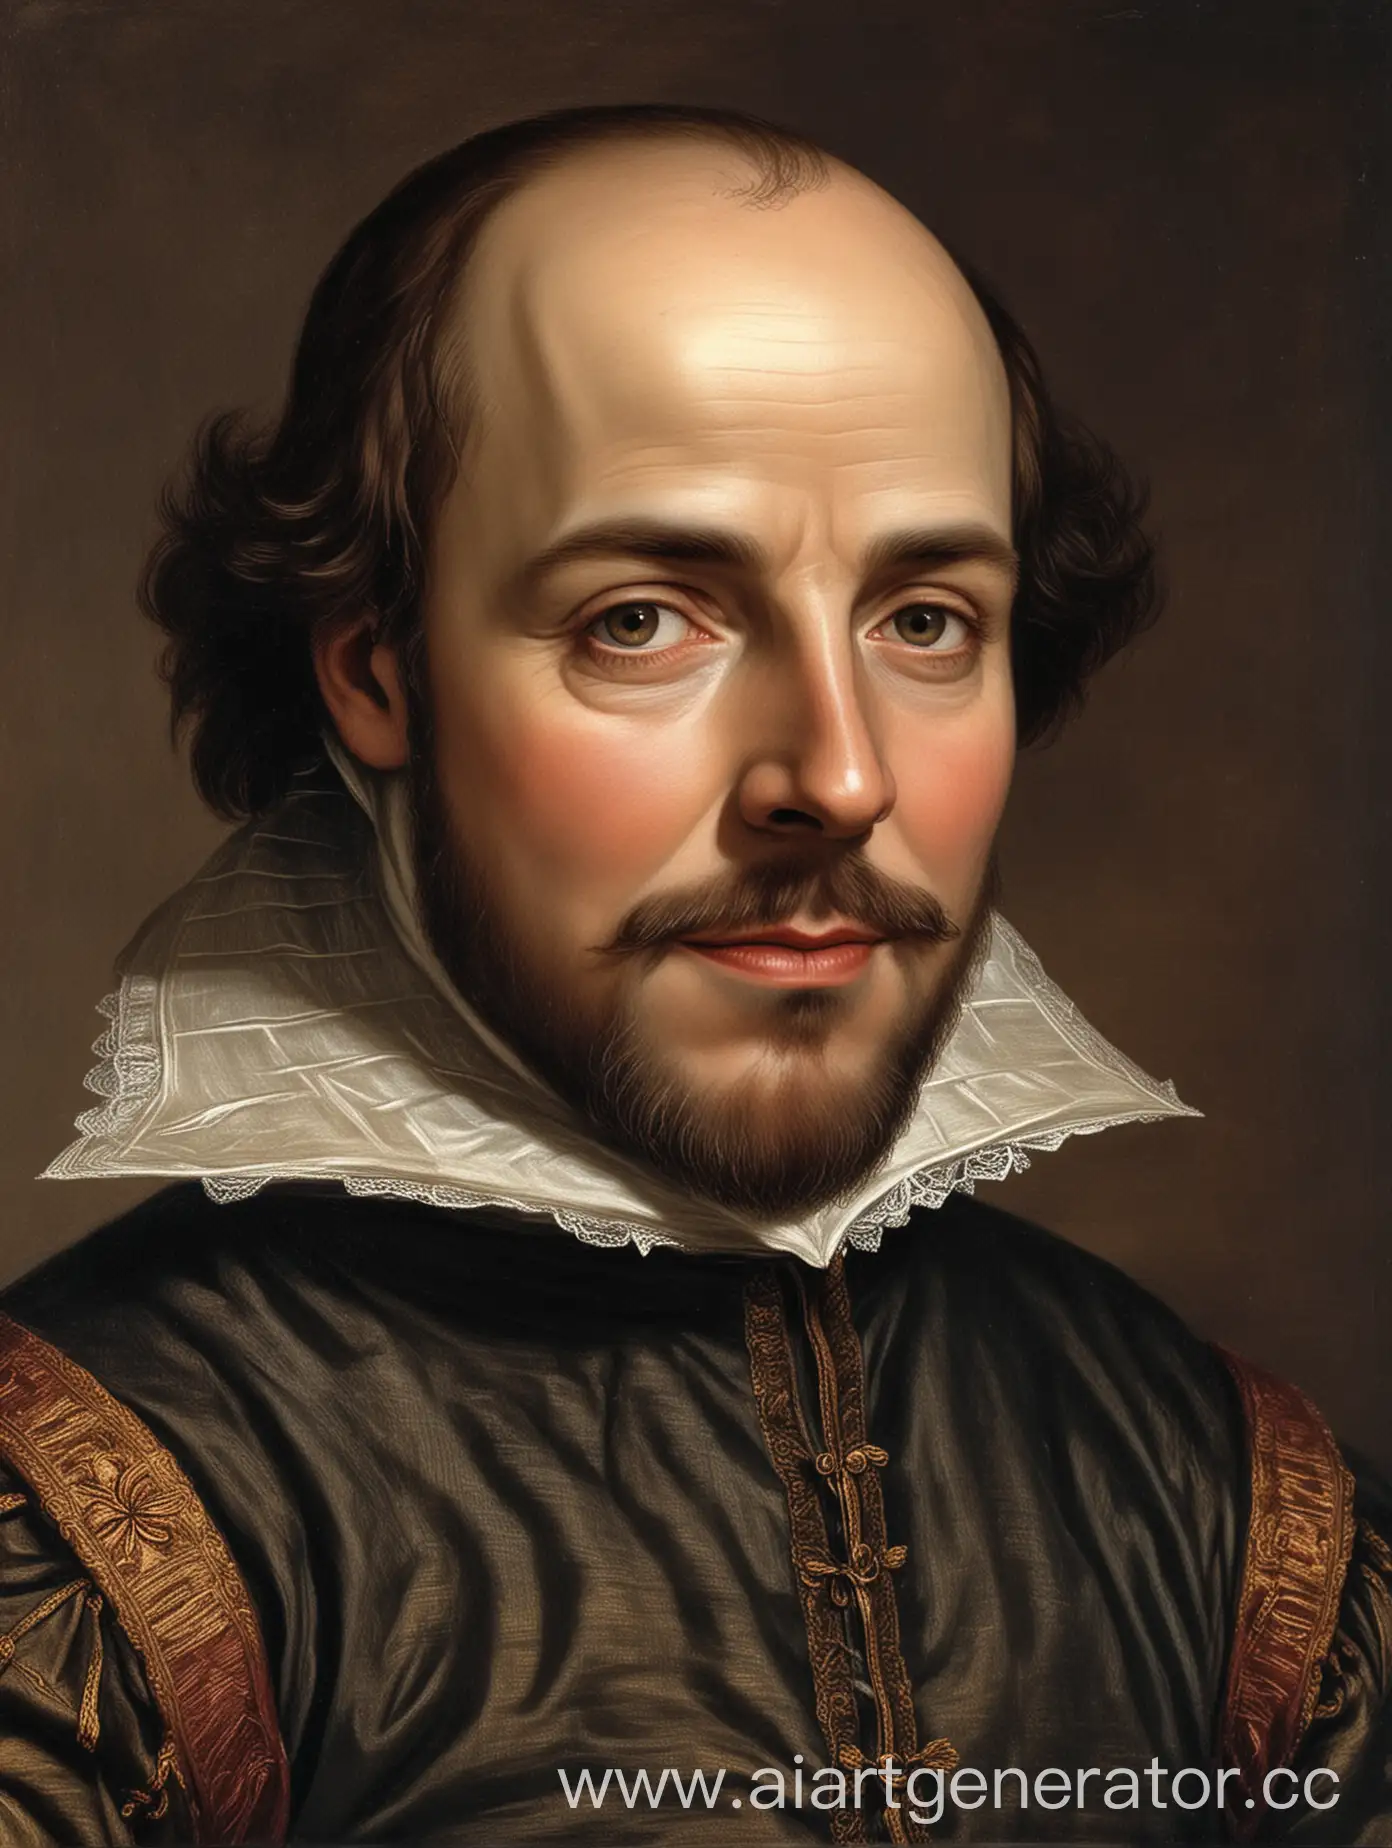 Шекспир родился в 1564 году в Стратфорде на Эйвоне, и его жизнь была полна творчества, которое оставило неизгладимый след в истории литературы. Его пьесы, такие как "Ромео и Джульетта", "Гамлет", "Отелло" и "Король Лир", до сих пор вызывают восхищение своей глубиной и актуальностью, ведь в них раскрываются универсальные темы любви, власти, предательства и справедливости.